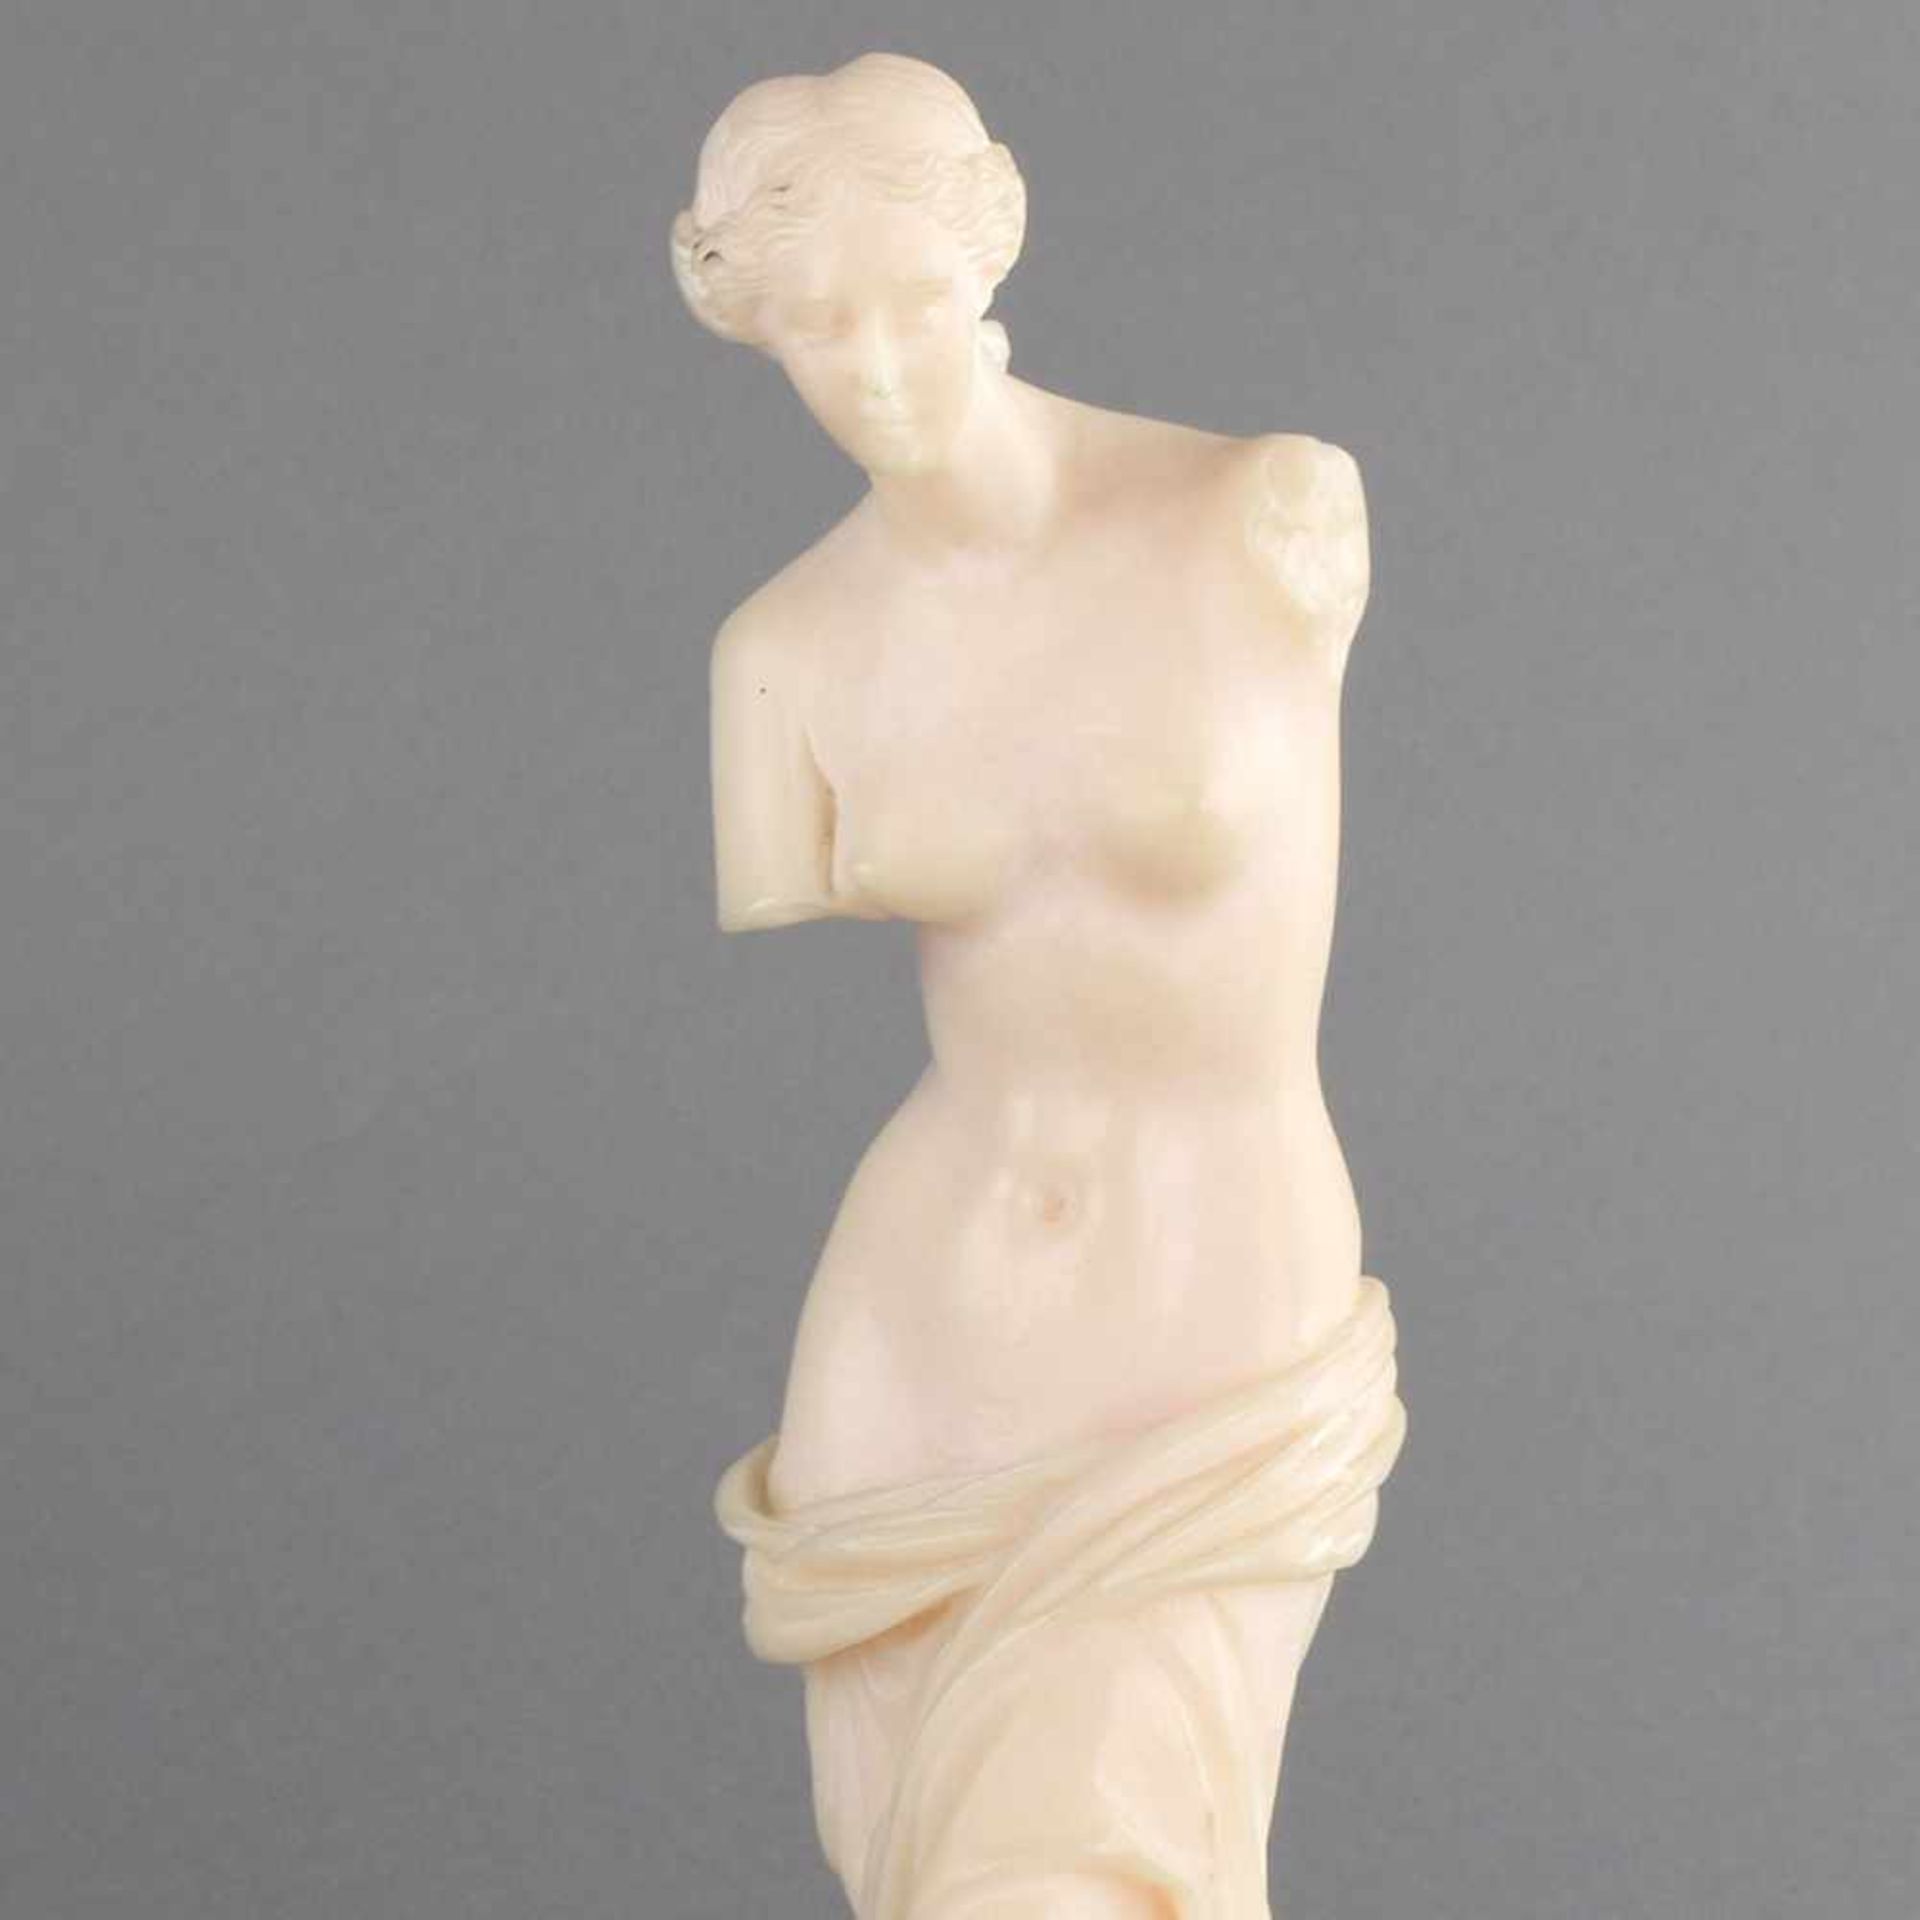 Venus alabasterfarbene Masse, nach dem bekannten antiken Vorbild der Venus von Milo, rechteckige